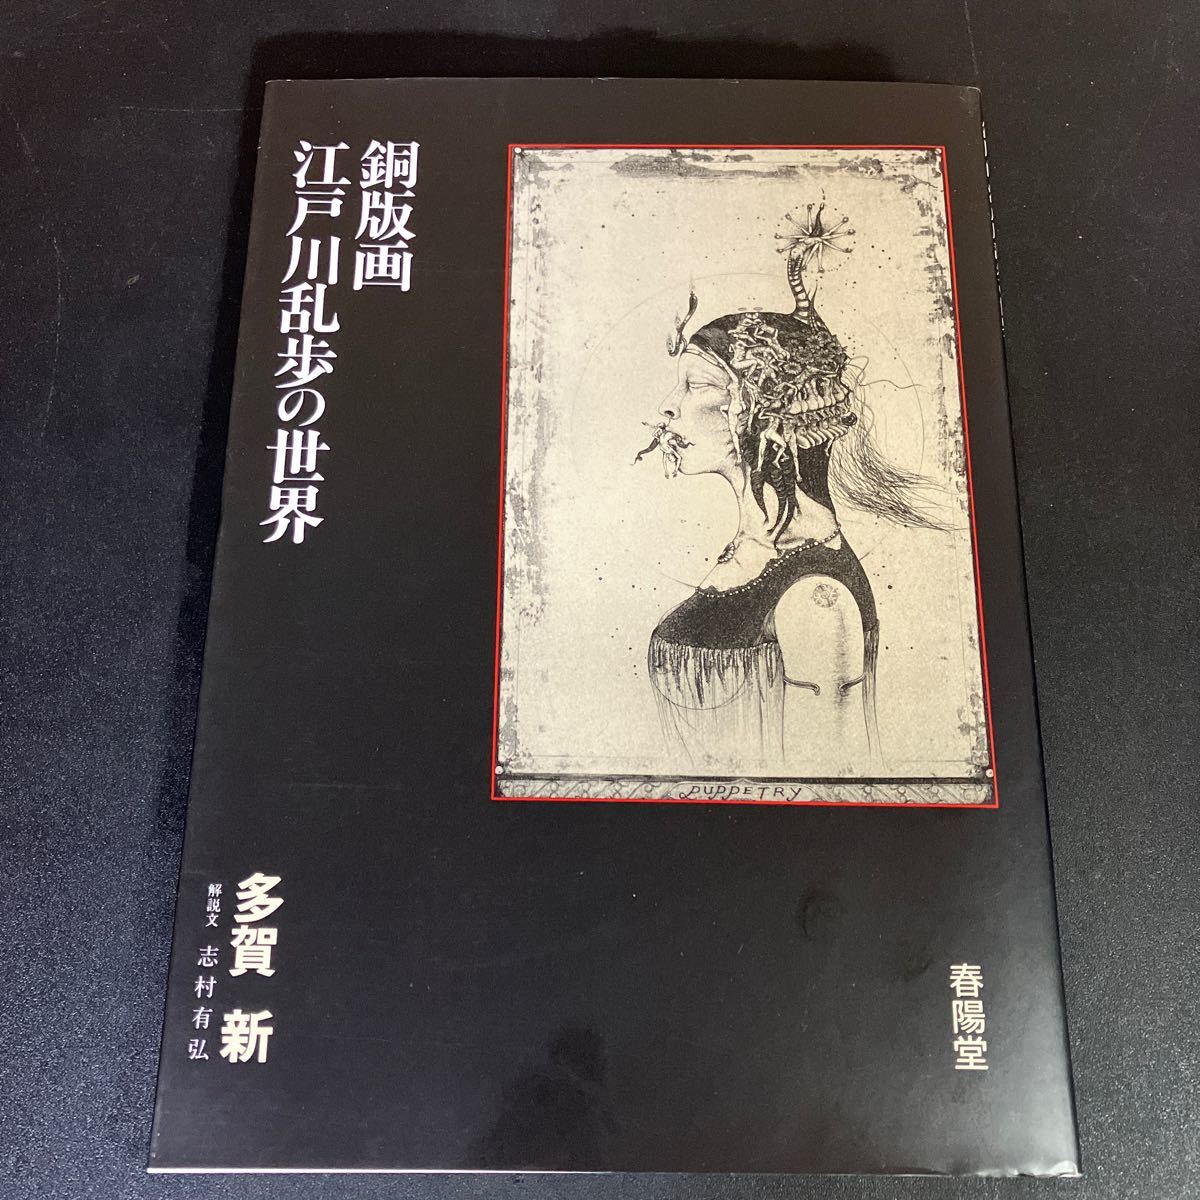 23-11-20 Le monde d'Edogawa Ranpo en gravures sur cuivre par Shin Taga, publié par Shunyodo, Peinture, Livre d'art, Collection, Livre d'art